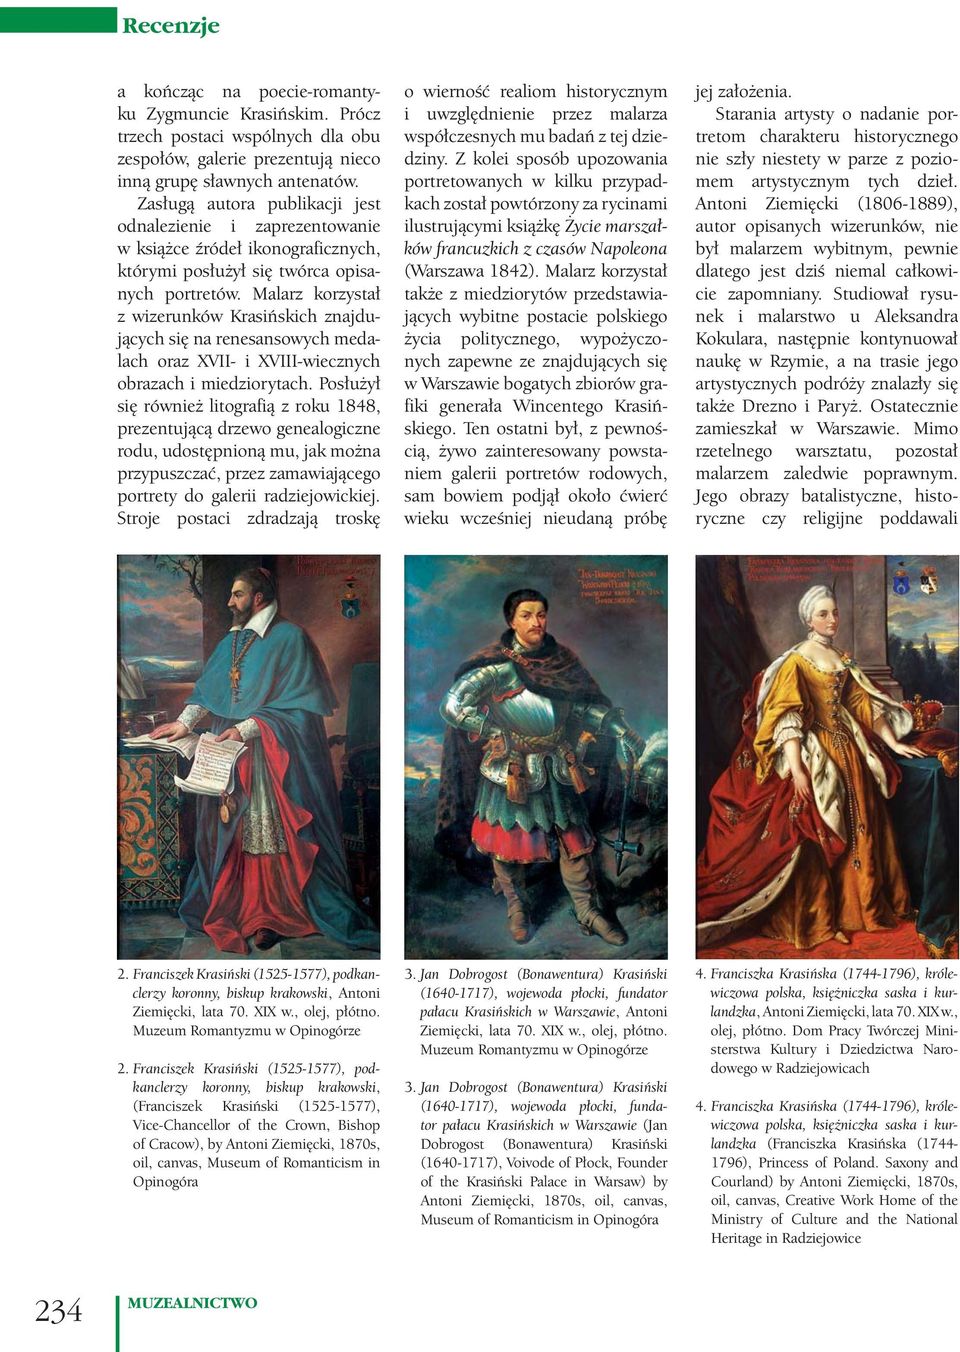 Malarz korzystał z wizerunków Krasińskich znajdujących się na renesansowych medalach oraz XVII- i XVIII-wiecznych obrazach i miedziorytach.